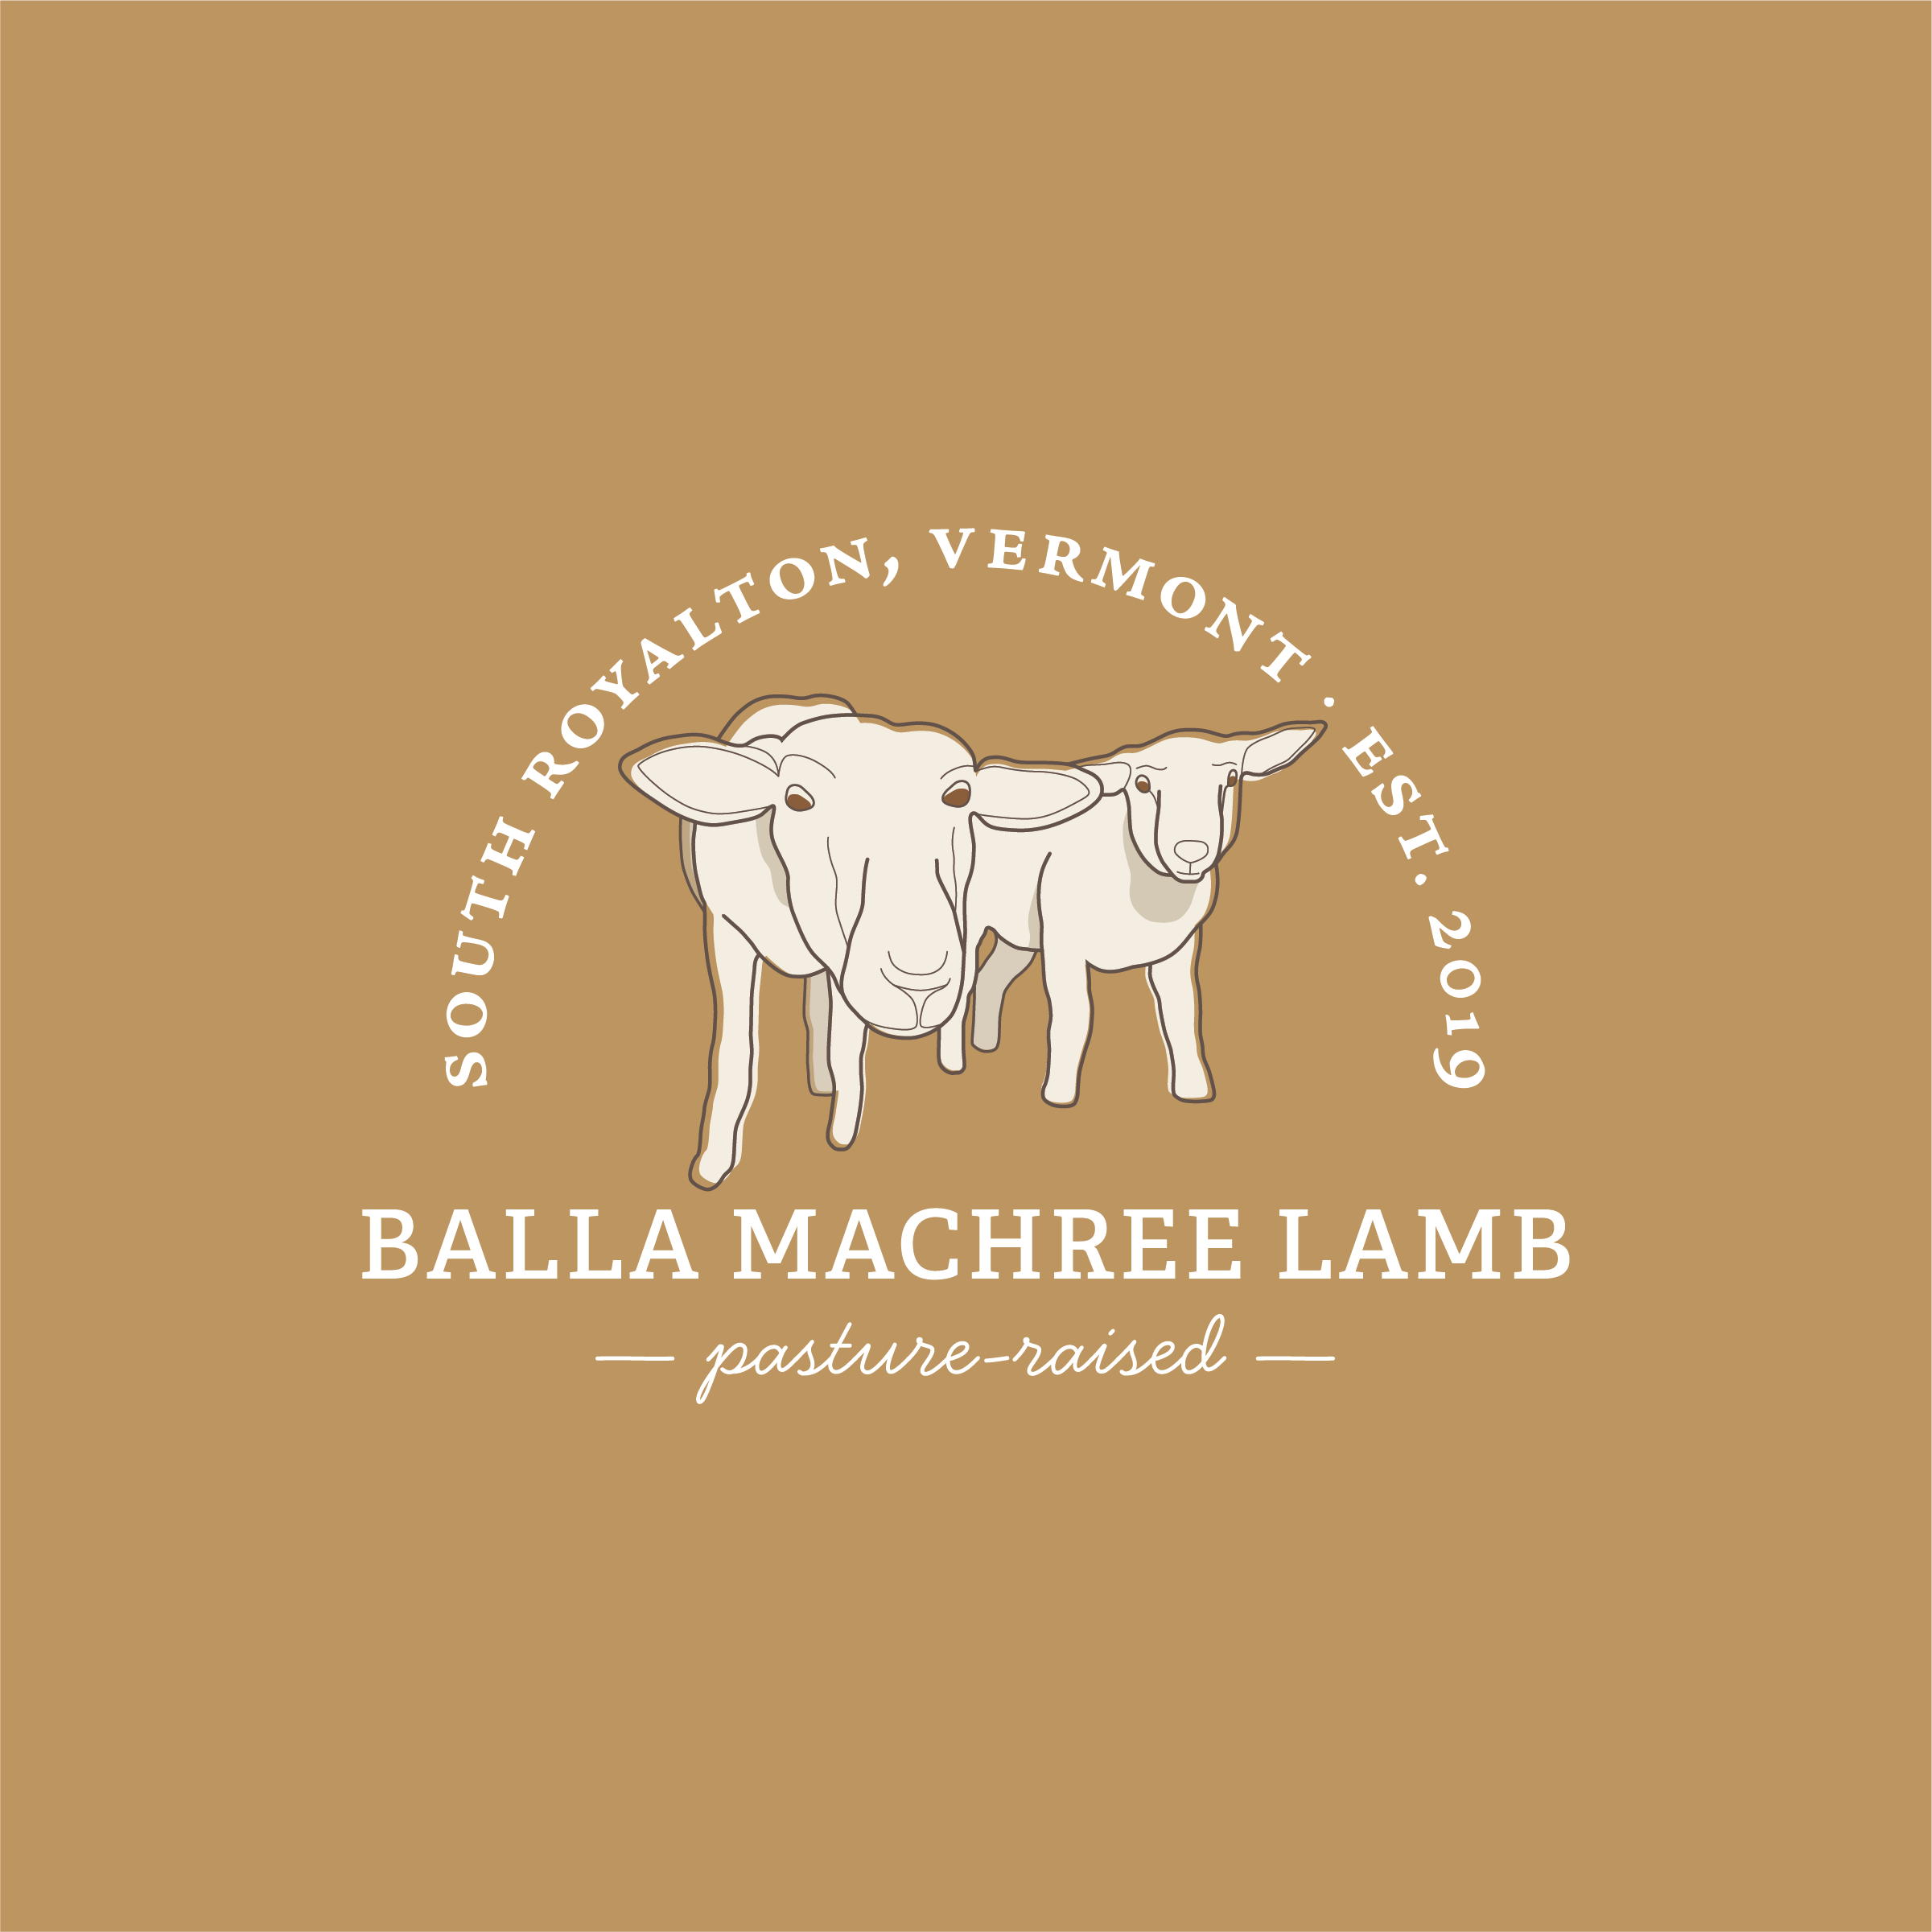 Coming Soon: Balla Machree Lamb